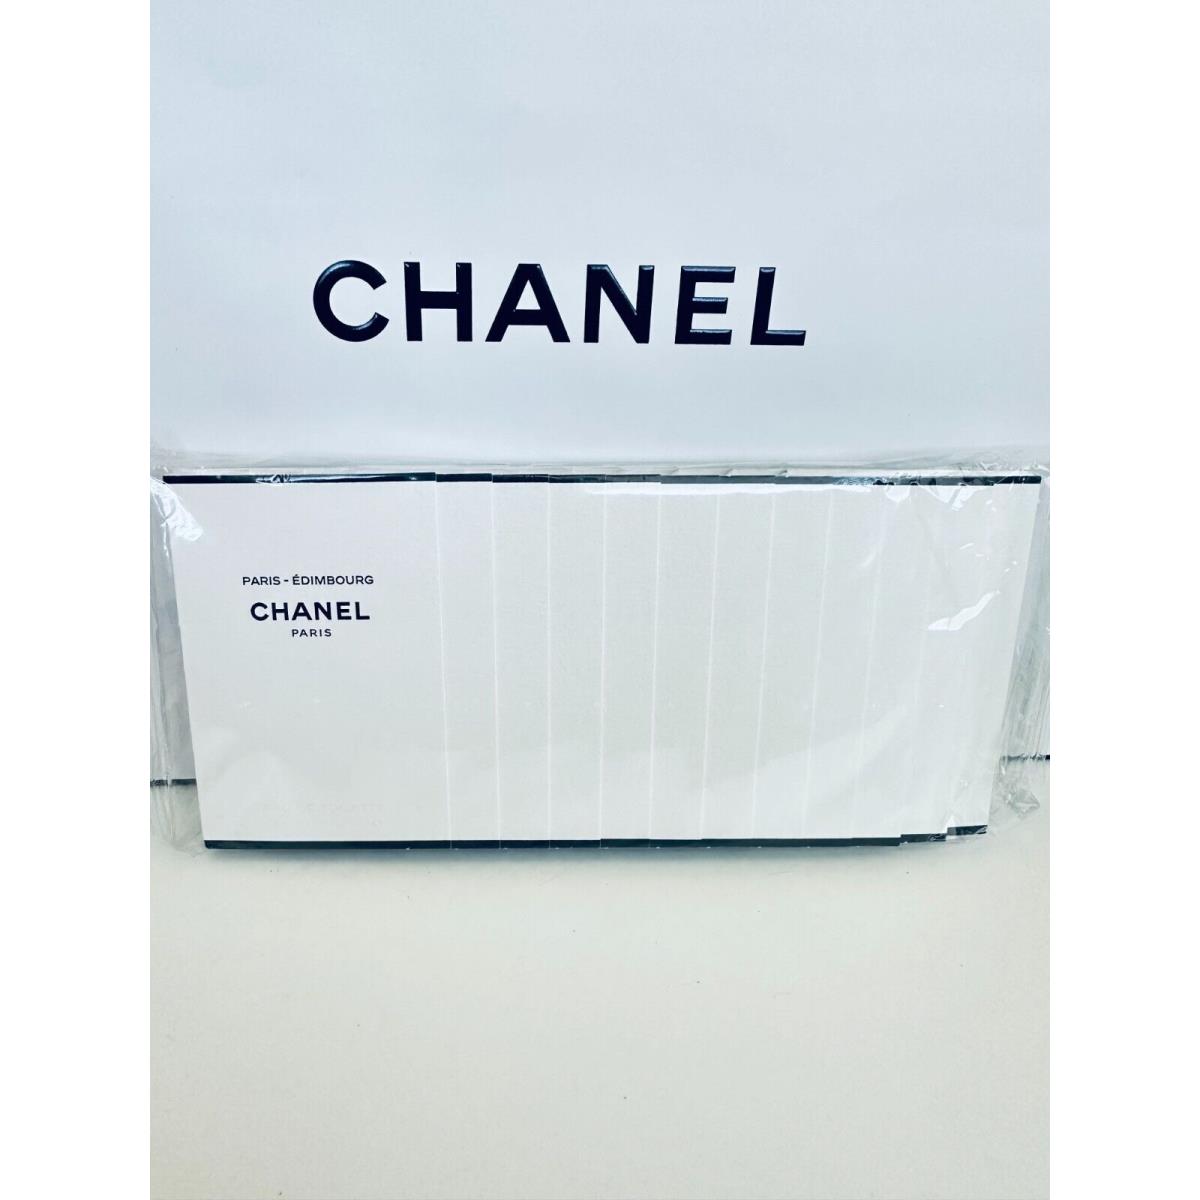 Chanel Les Eaux de Chanel Paris Sample Size 1.5ml-12pcs/pack Choose Your Scent Chanel Paris Edimbourg